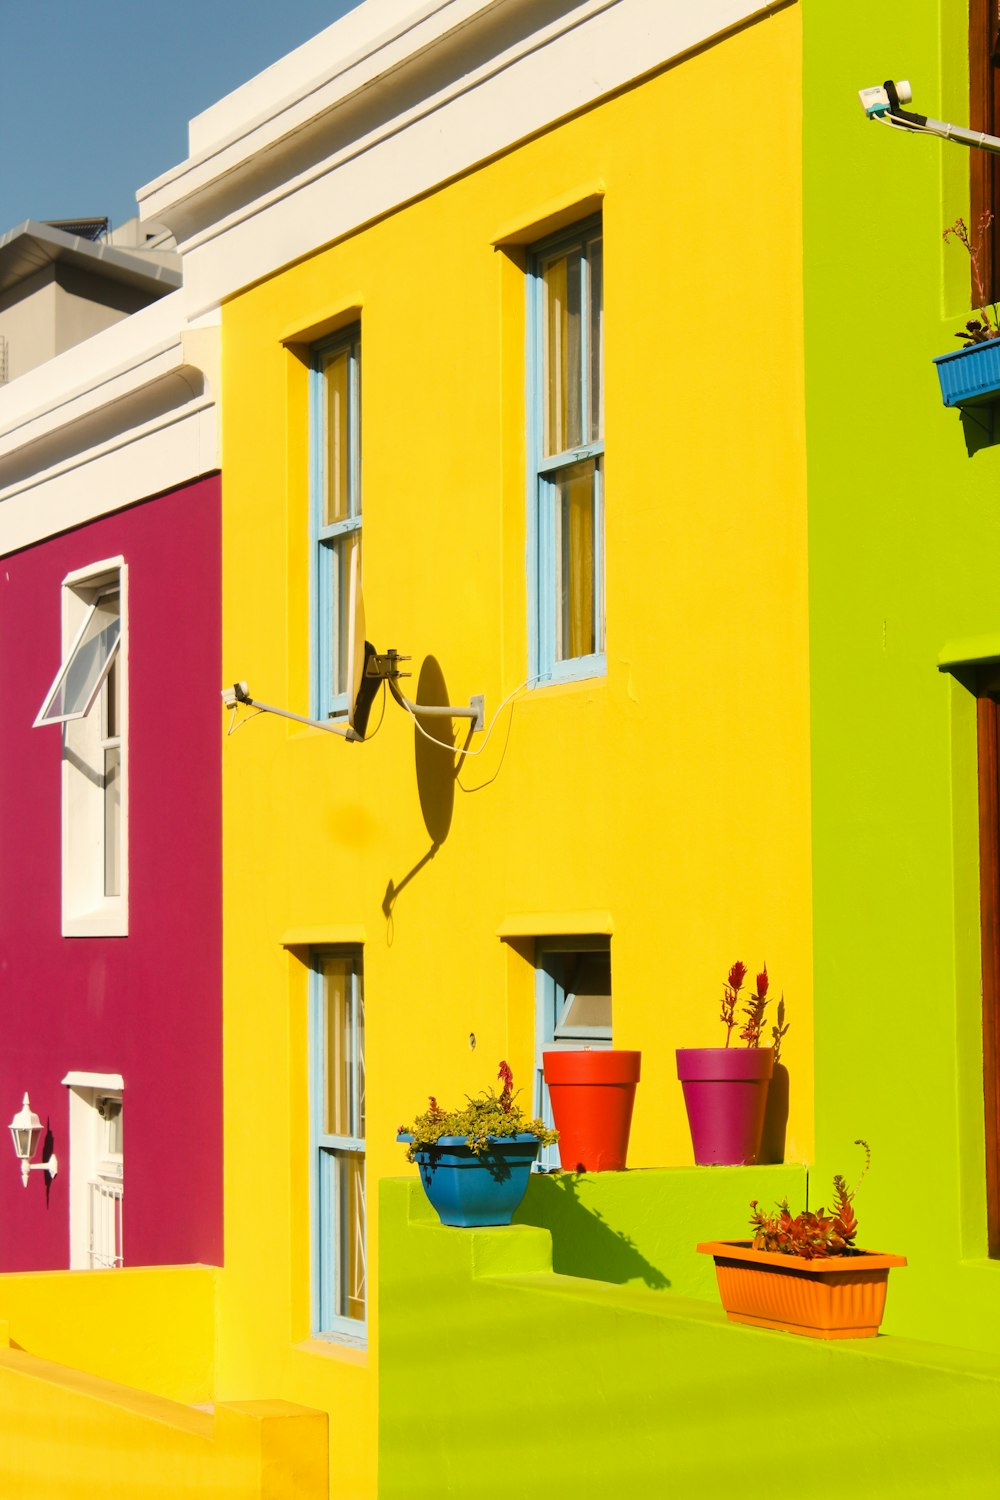 Una hilera de casas de colores brillantes en un día soleado